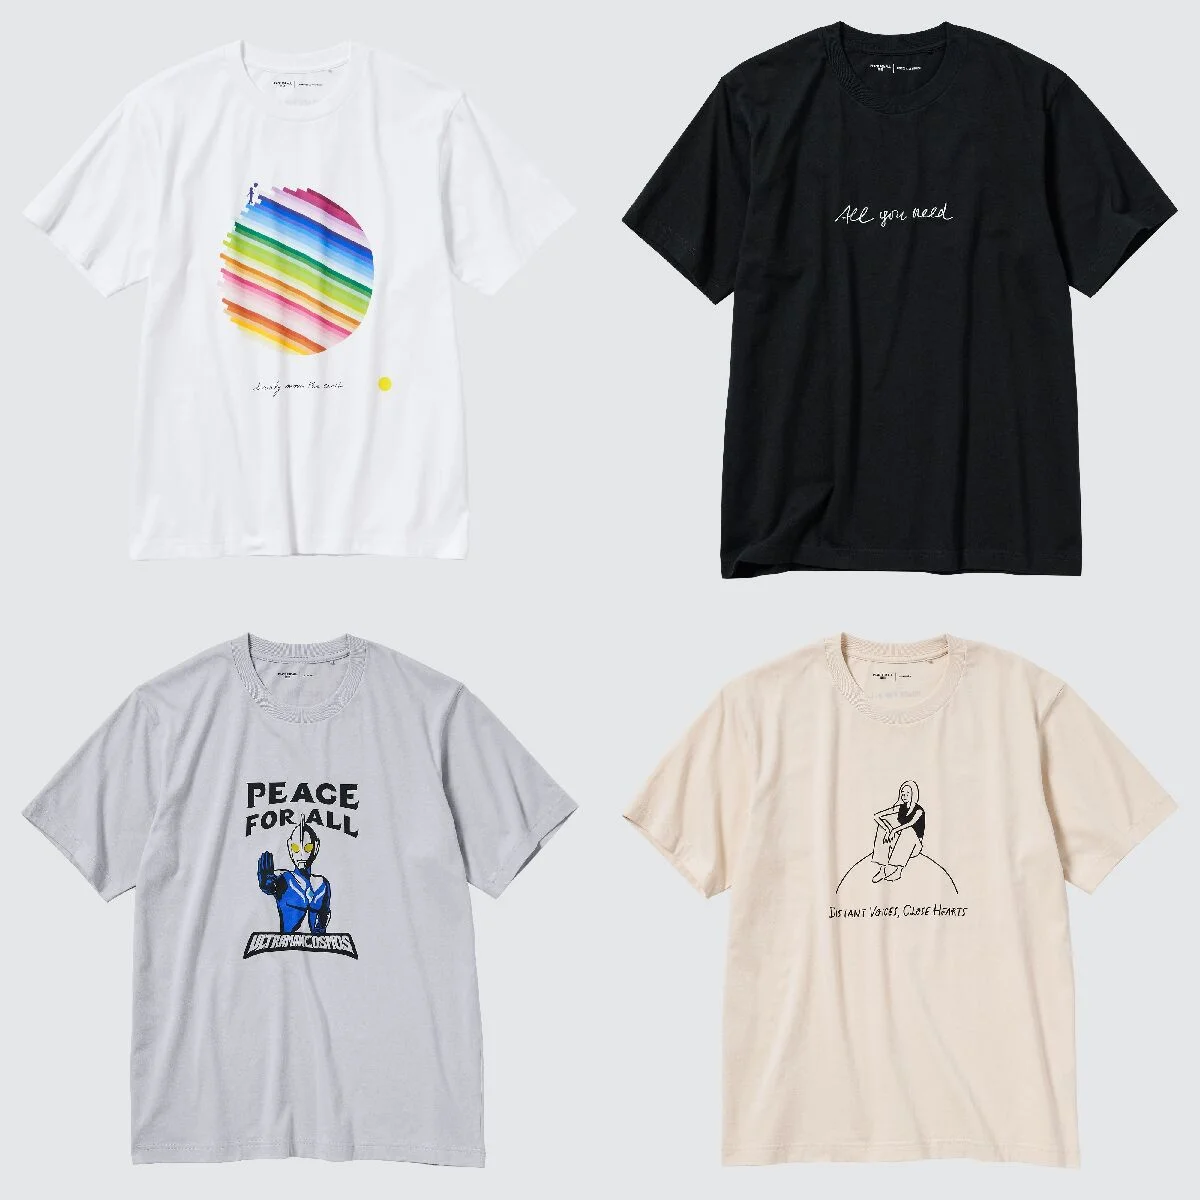 新たに著名人４名が参加。【ユニクロ】チャリティTシャツプロジェクトの新作ホリデーコレクションが発売